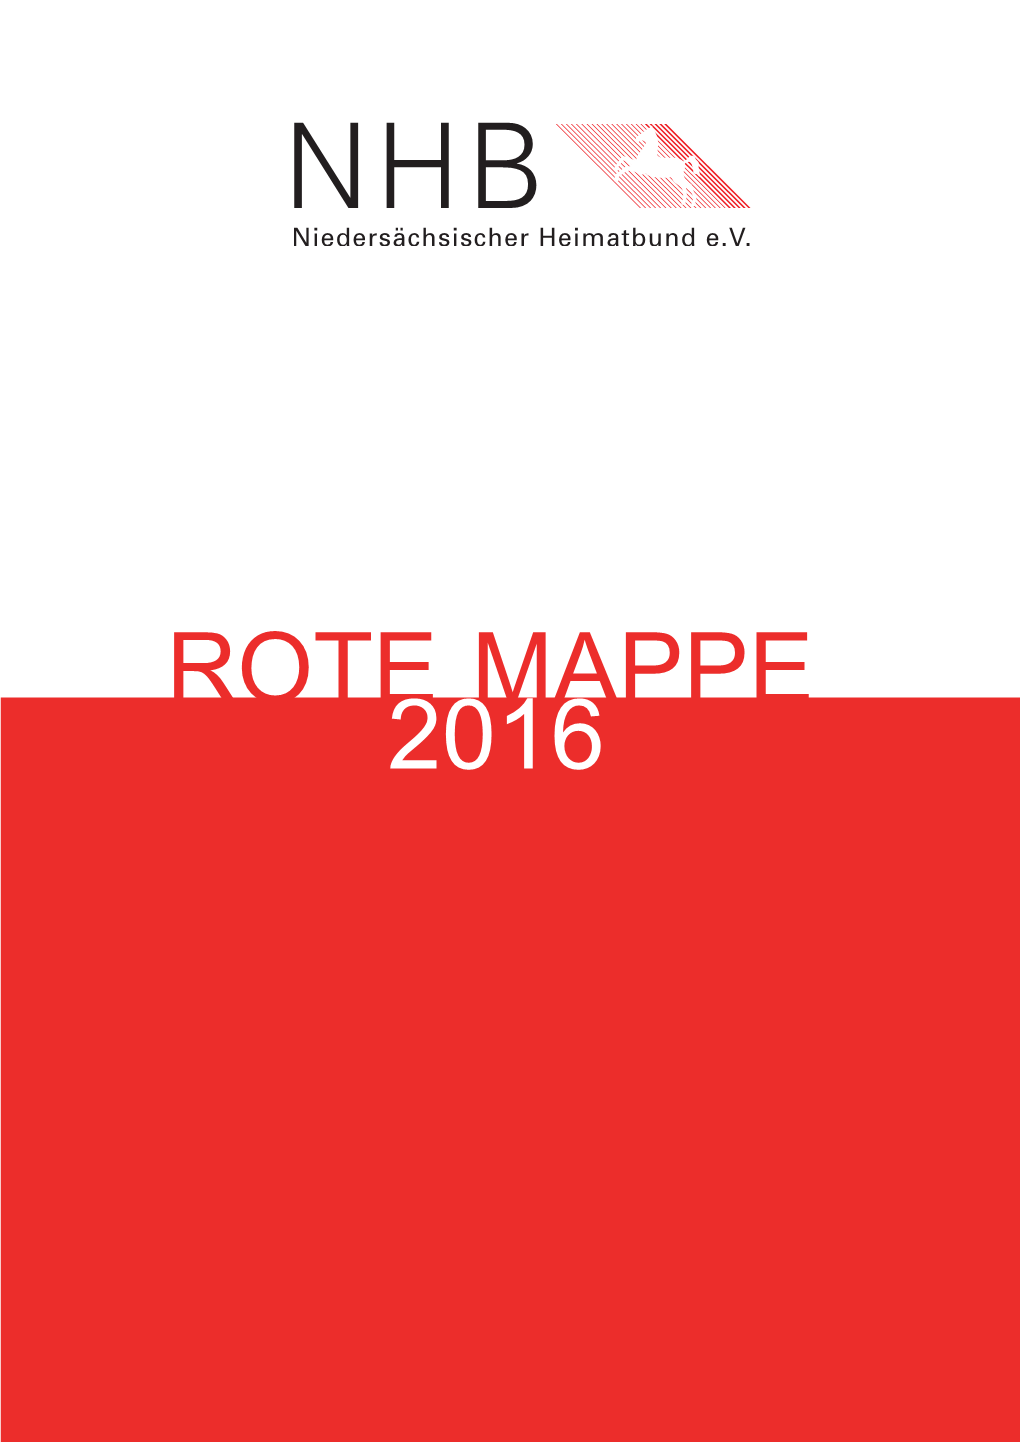 ROTE MAPPE* 2016 Des Niedersächsischen Heimatbundes E